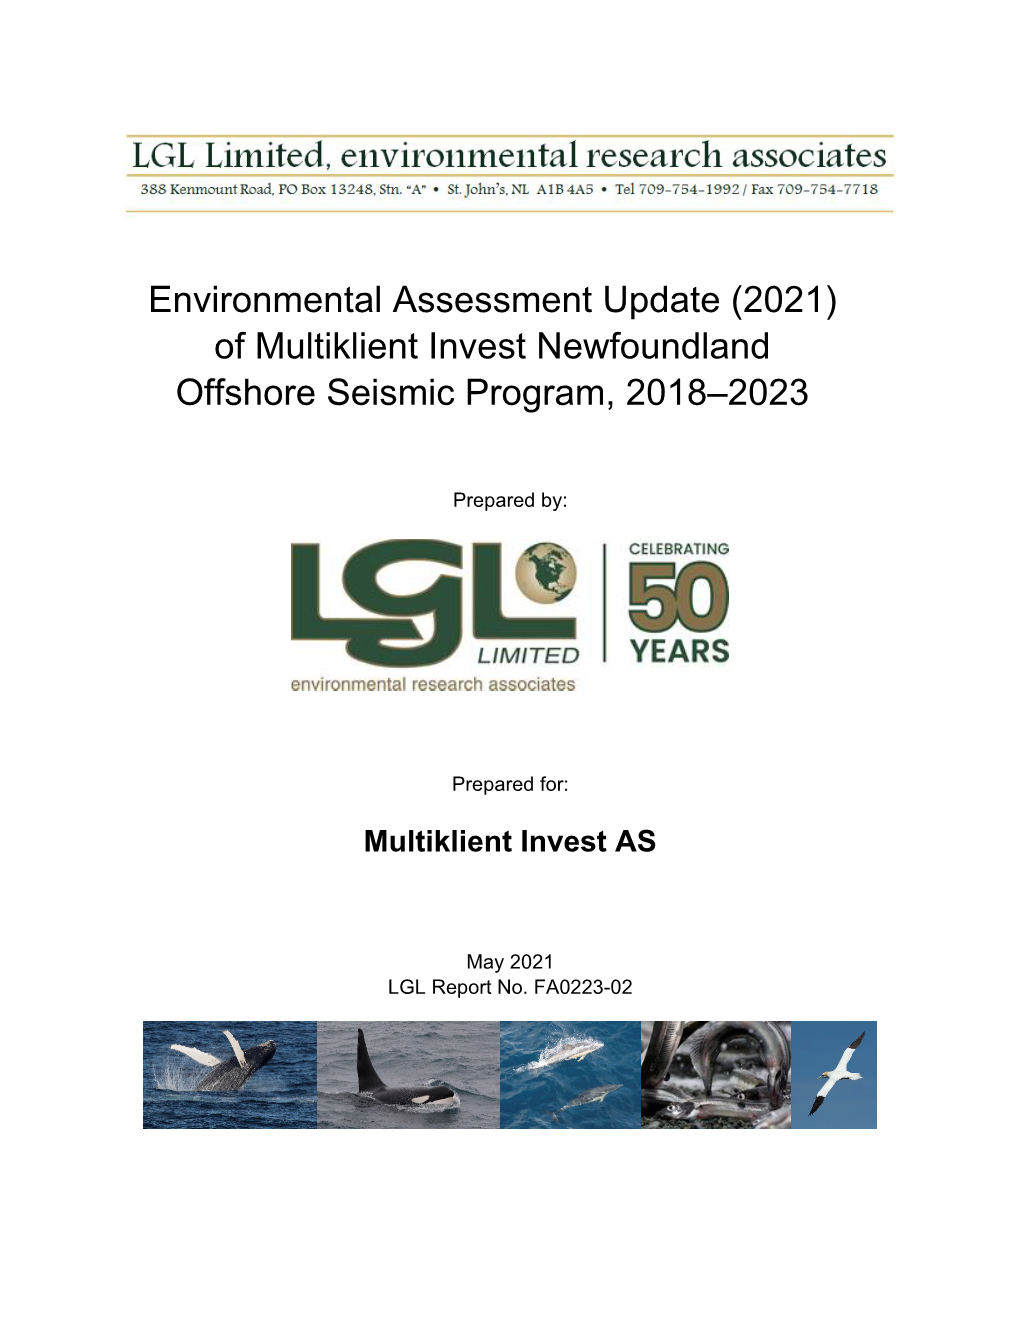 (2021) of Multiklient Invest Newfoundland Offshore Seismic Program, 2018–2023